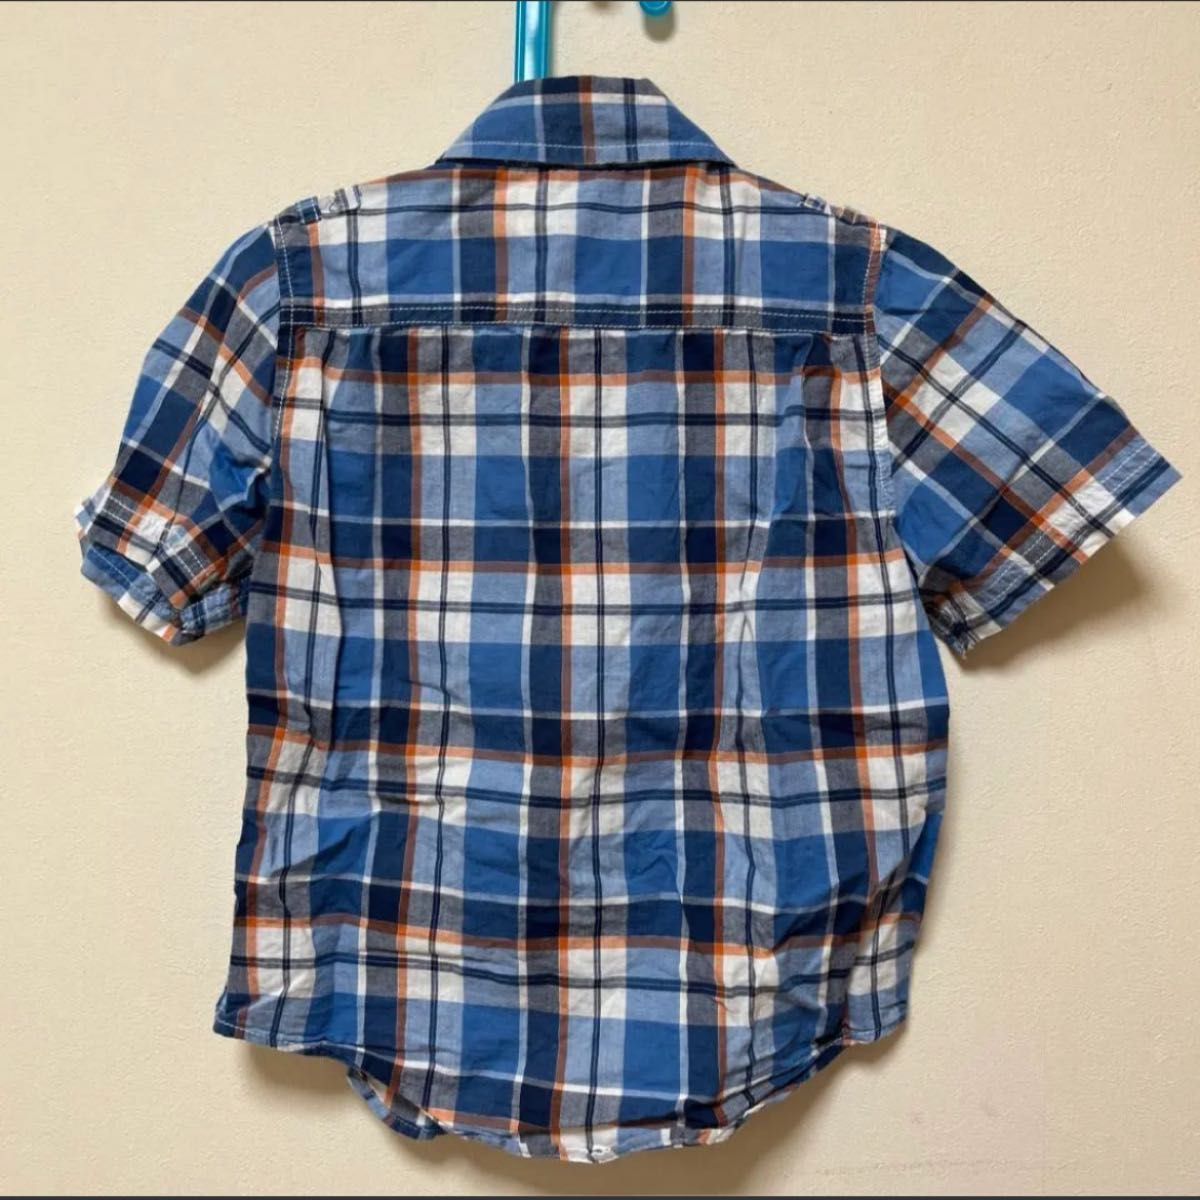 即購入OK!★babygap110cmブルー&チェック半袖シャツベビーギャップ青シャツ チェックシャツ